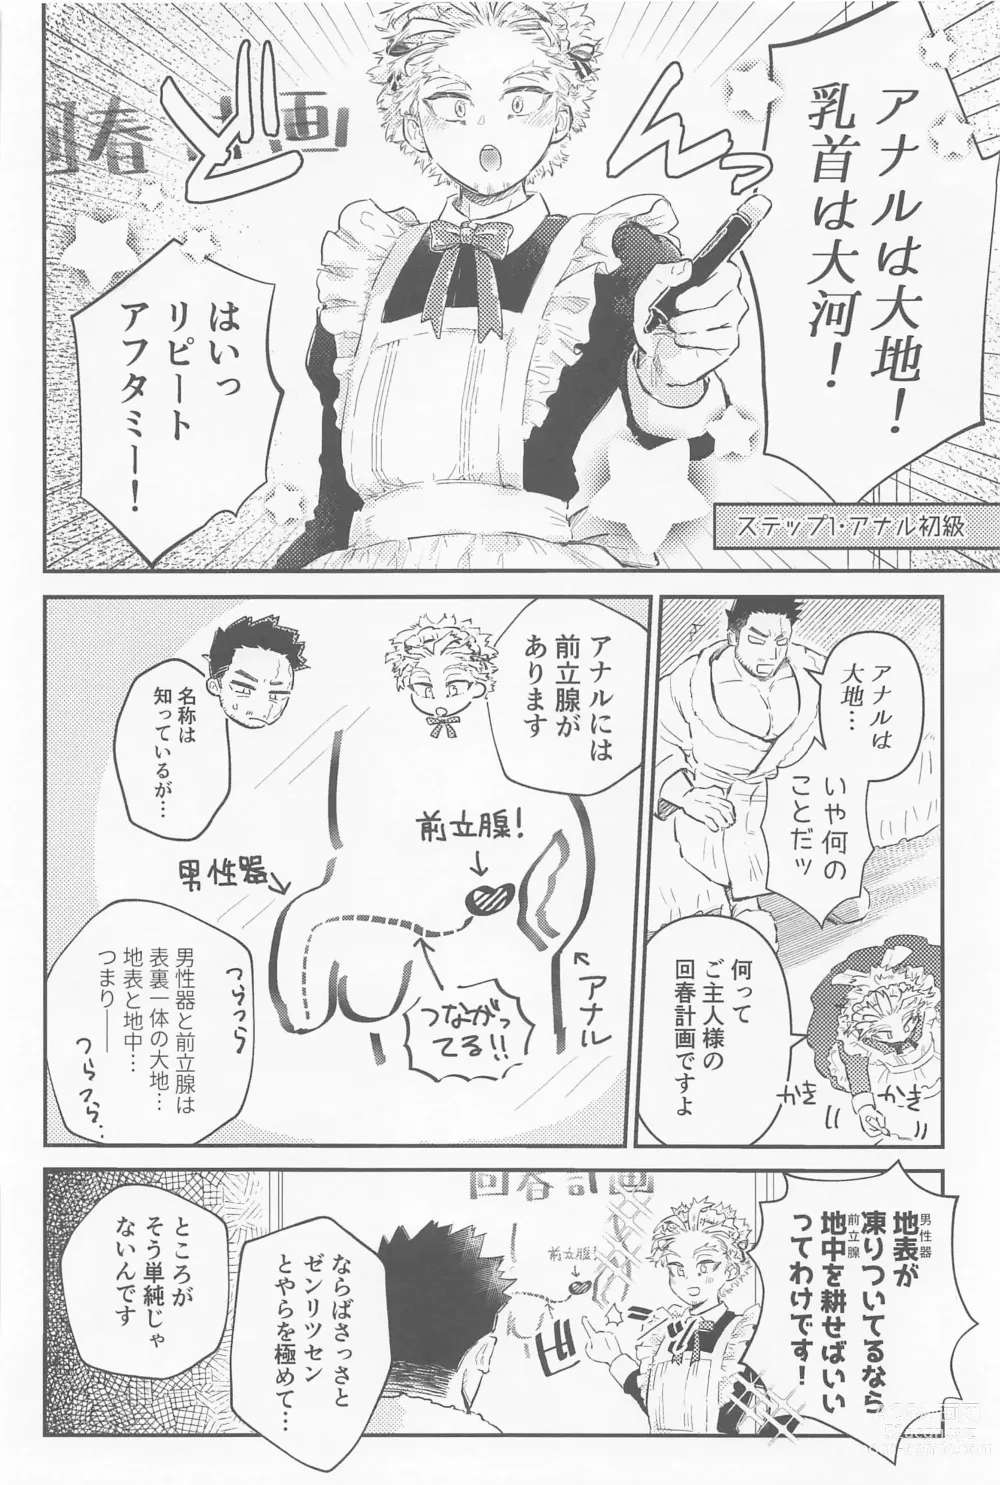 Page 9 of doujinshi Kaishun Maid wa Midarenai